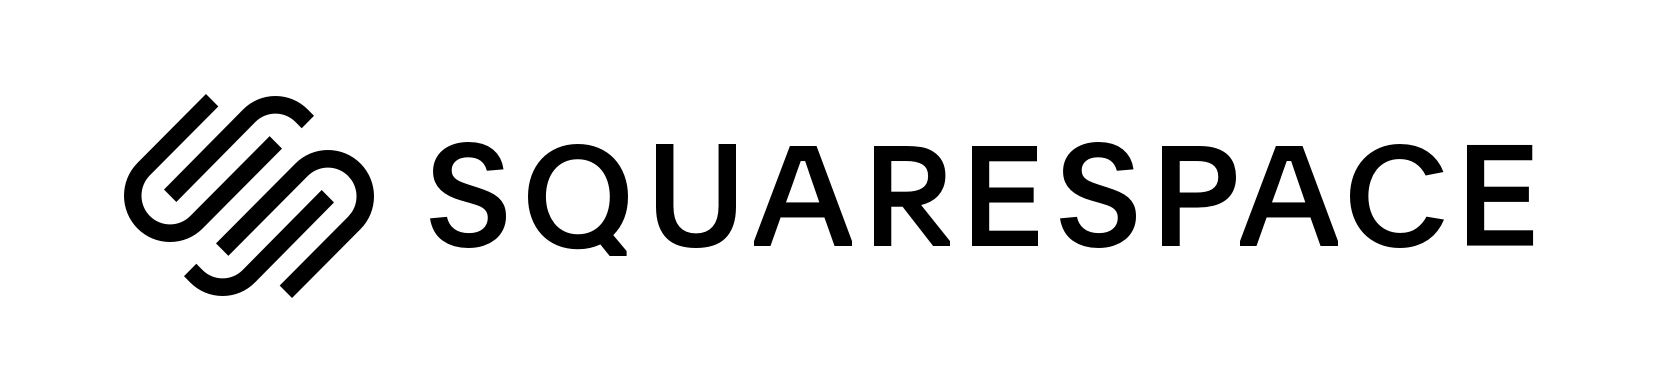 squarespace logo horizontal black - Bốn bài học từ lần đó tôi rút ra lời khuyên cho riêng mình